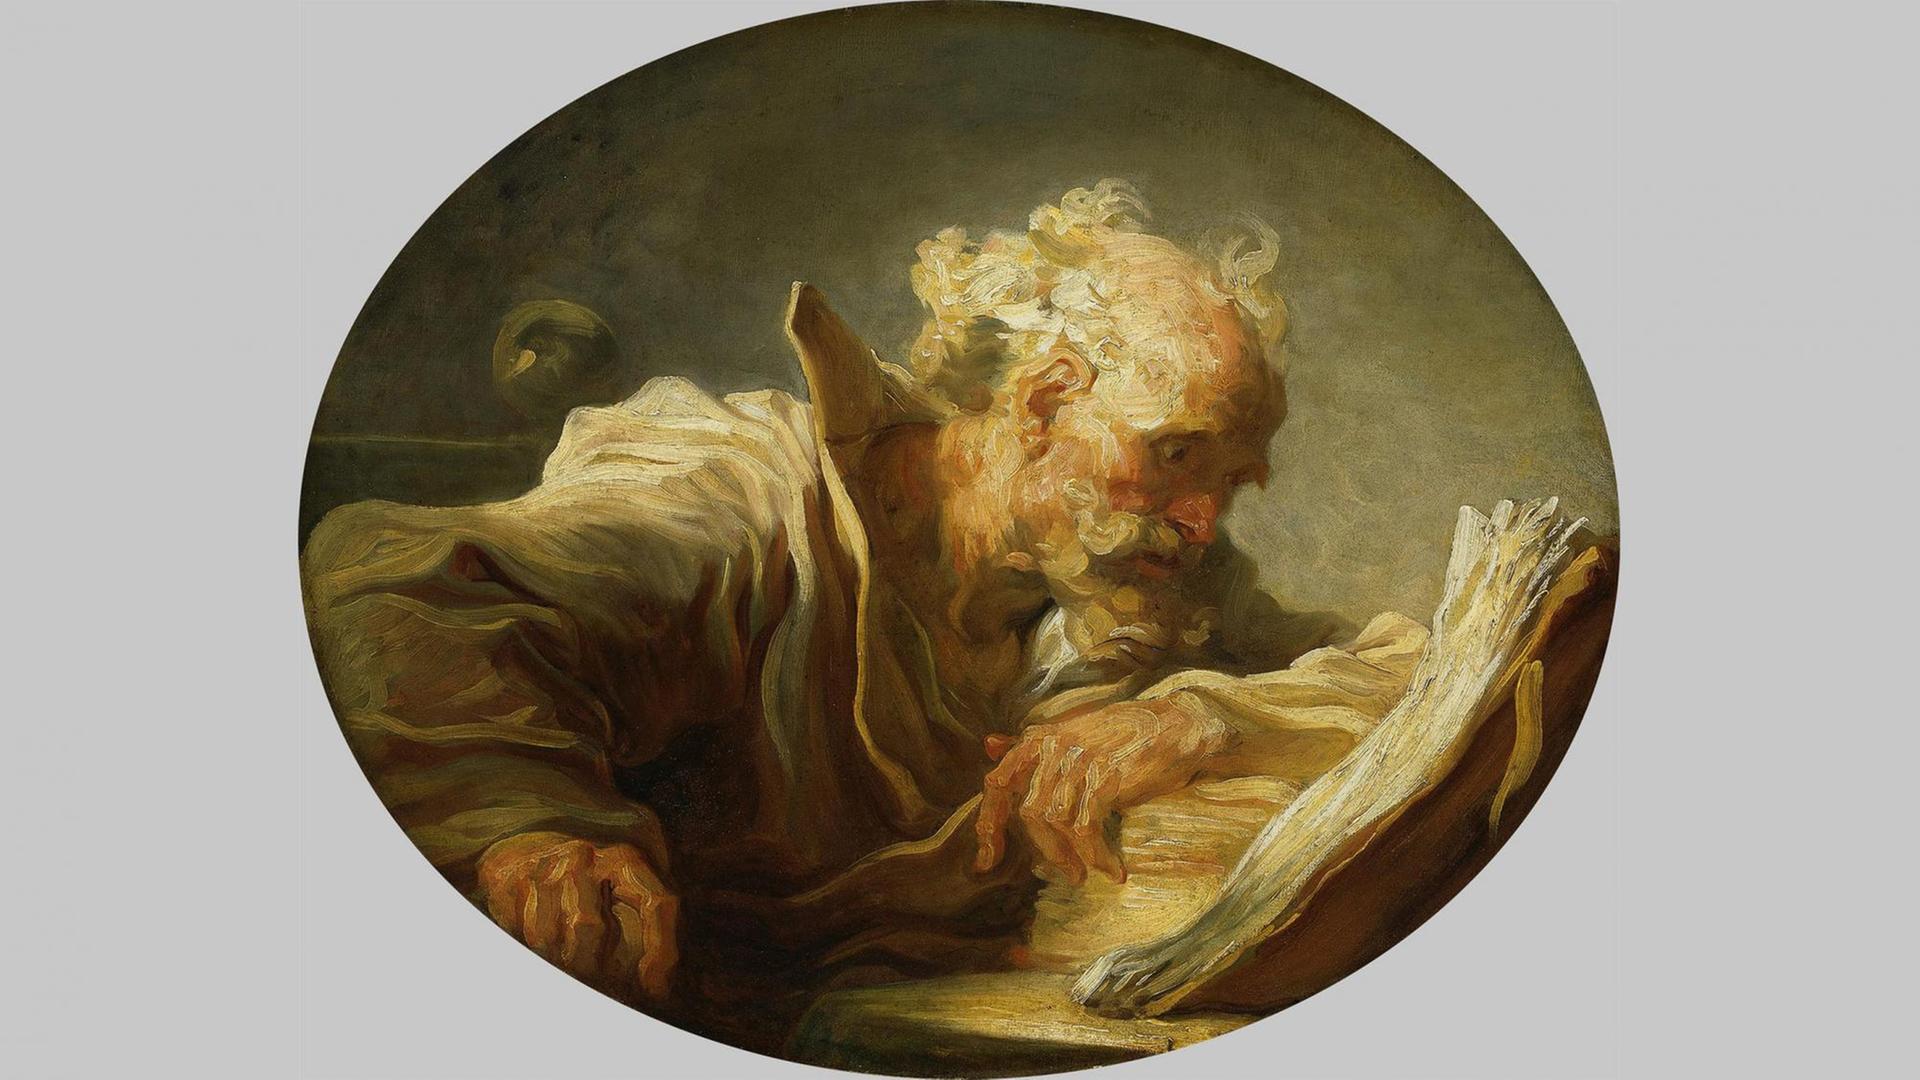 Malerei von Jean-Honoré Fragonard. "Der Philosoph", um 1764. Ein weißhaariger Mann vor einem Buch.